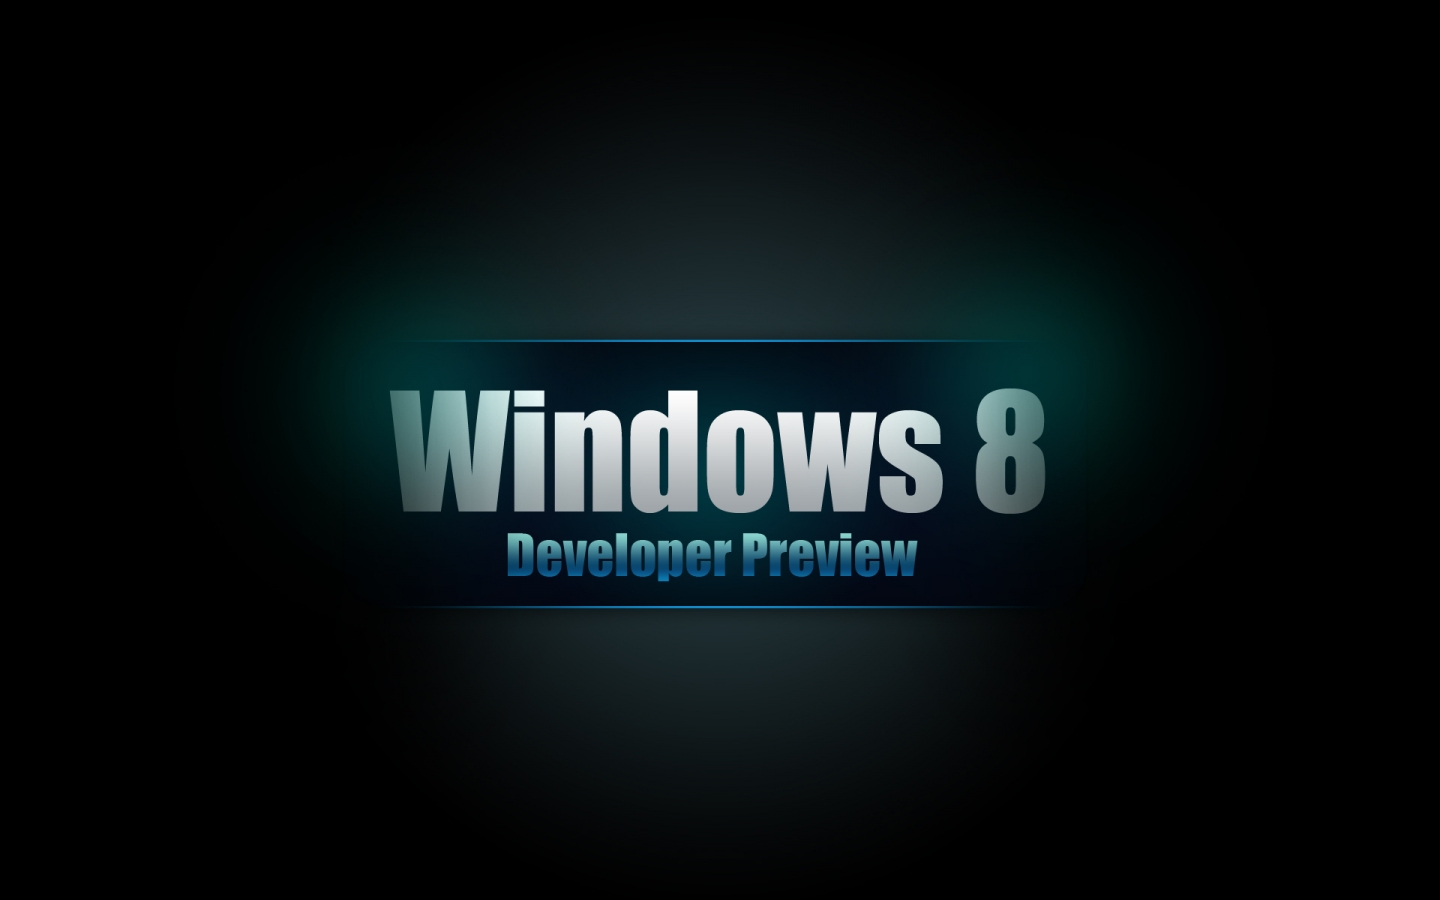 Windows 8 Developer for 1440 x 900 widescreen resolution